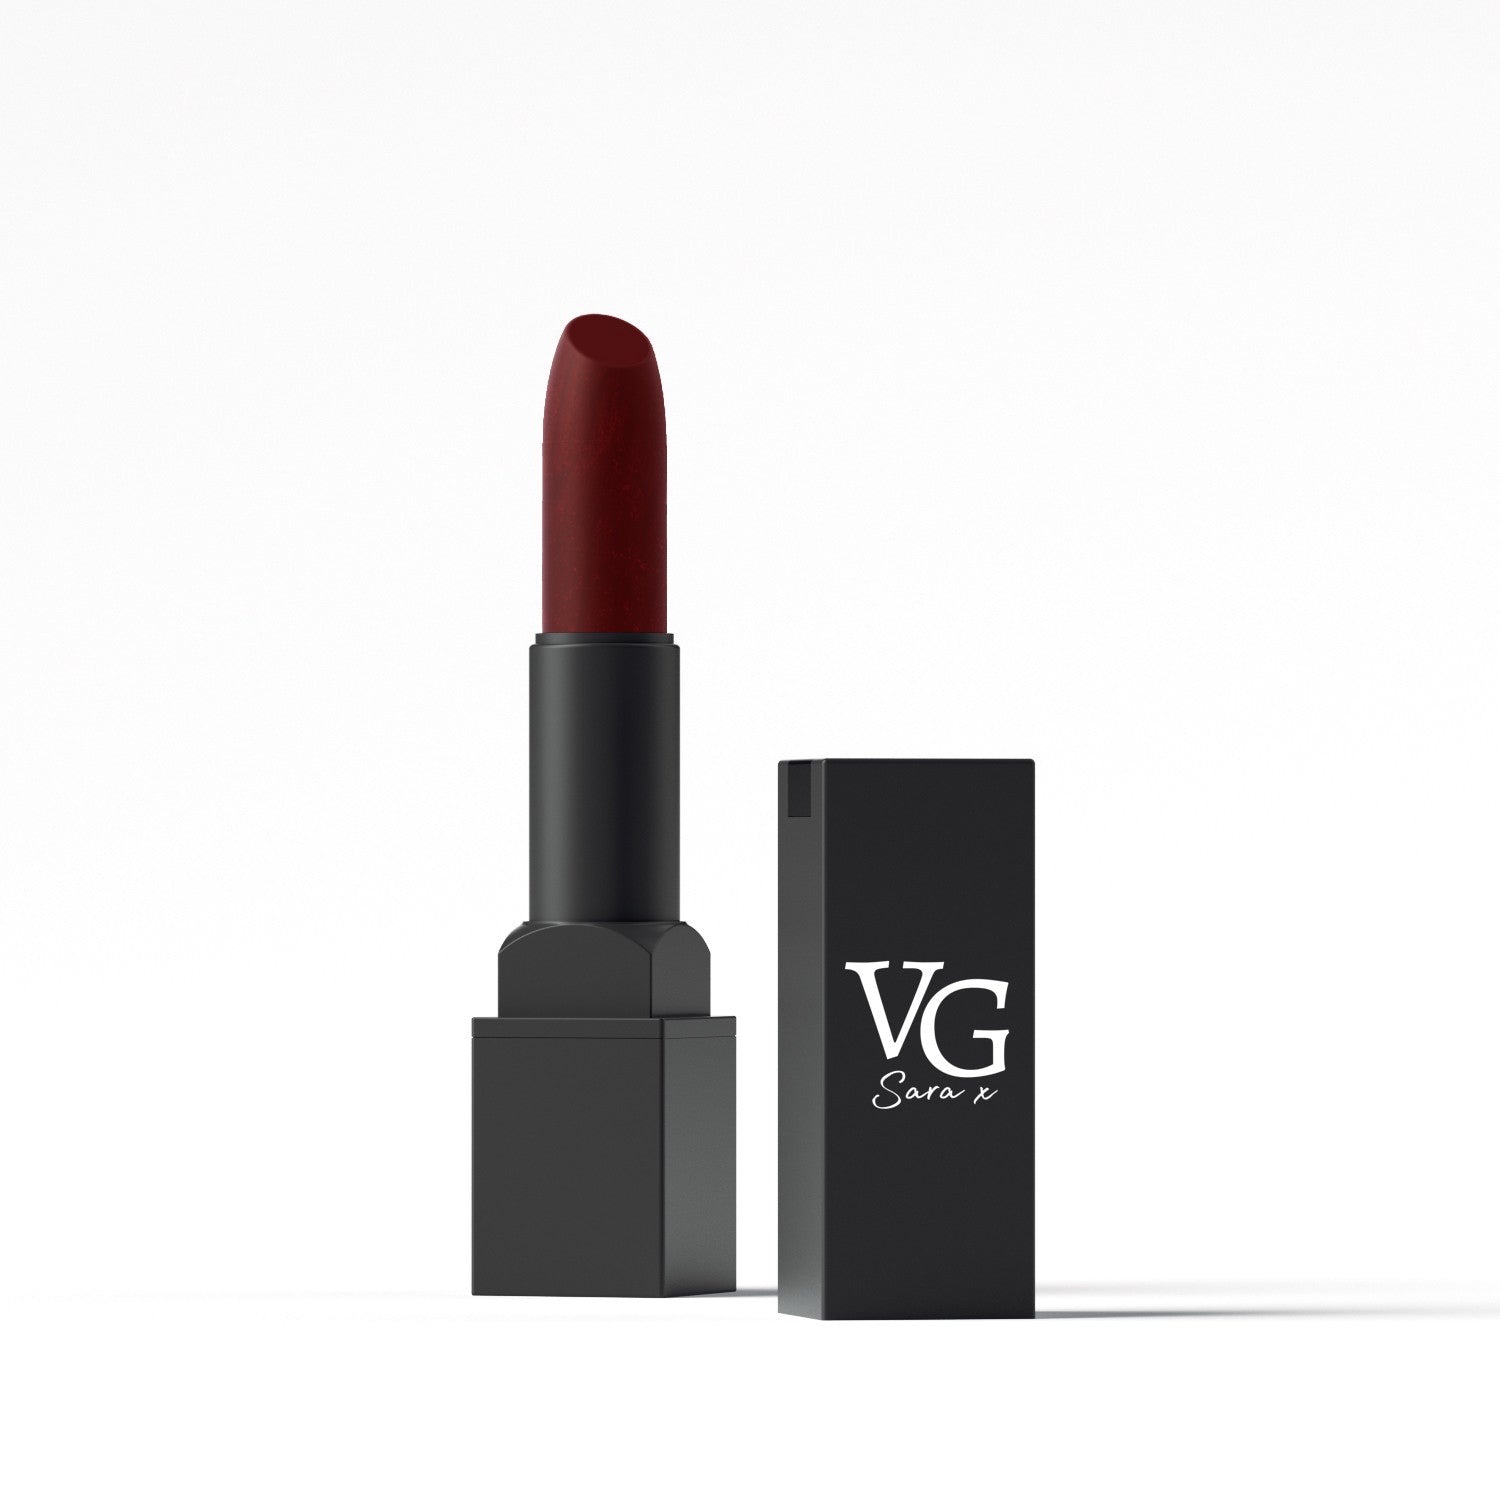 Sleek VG lipstick designed for lasting wear